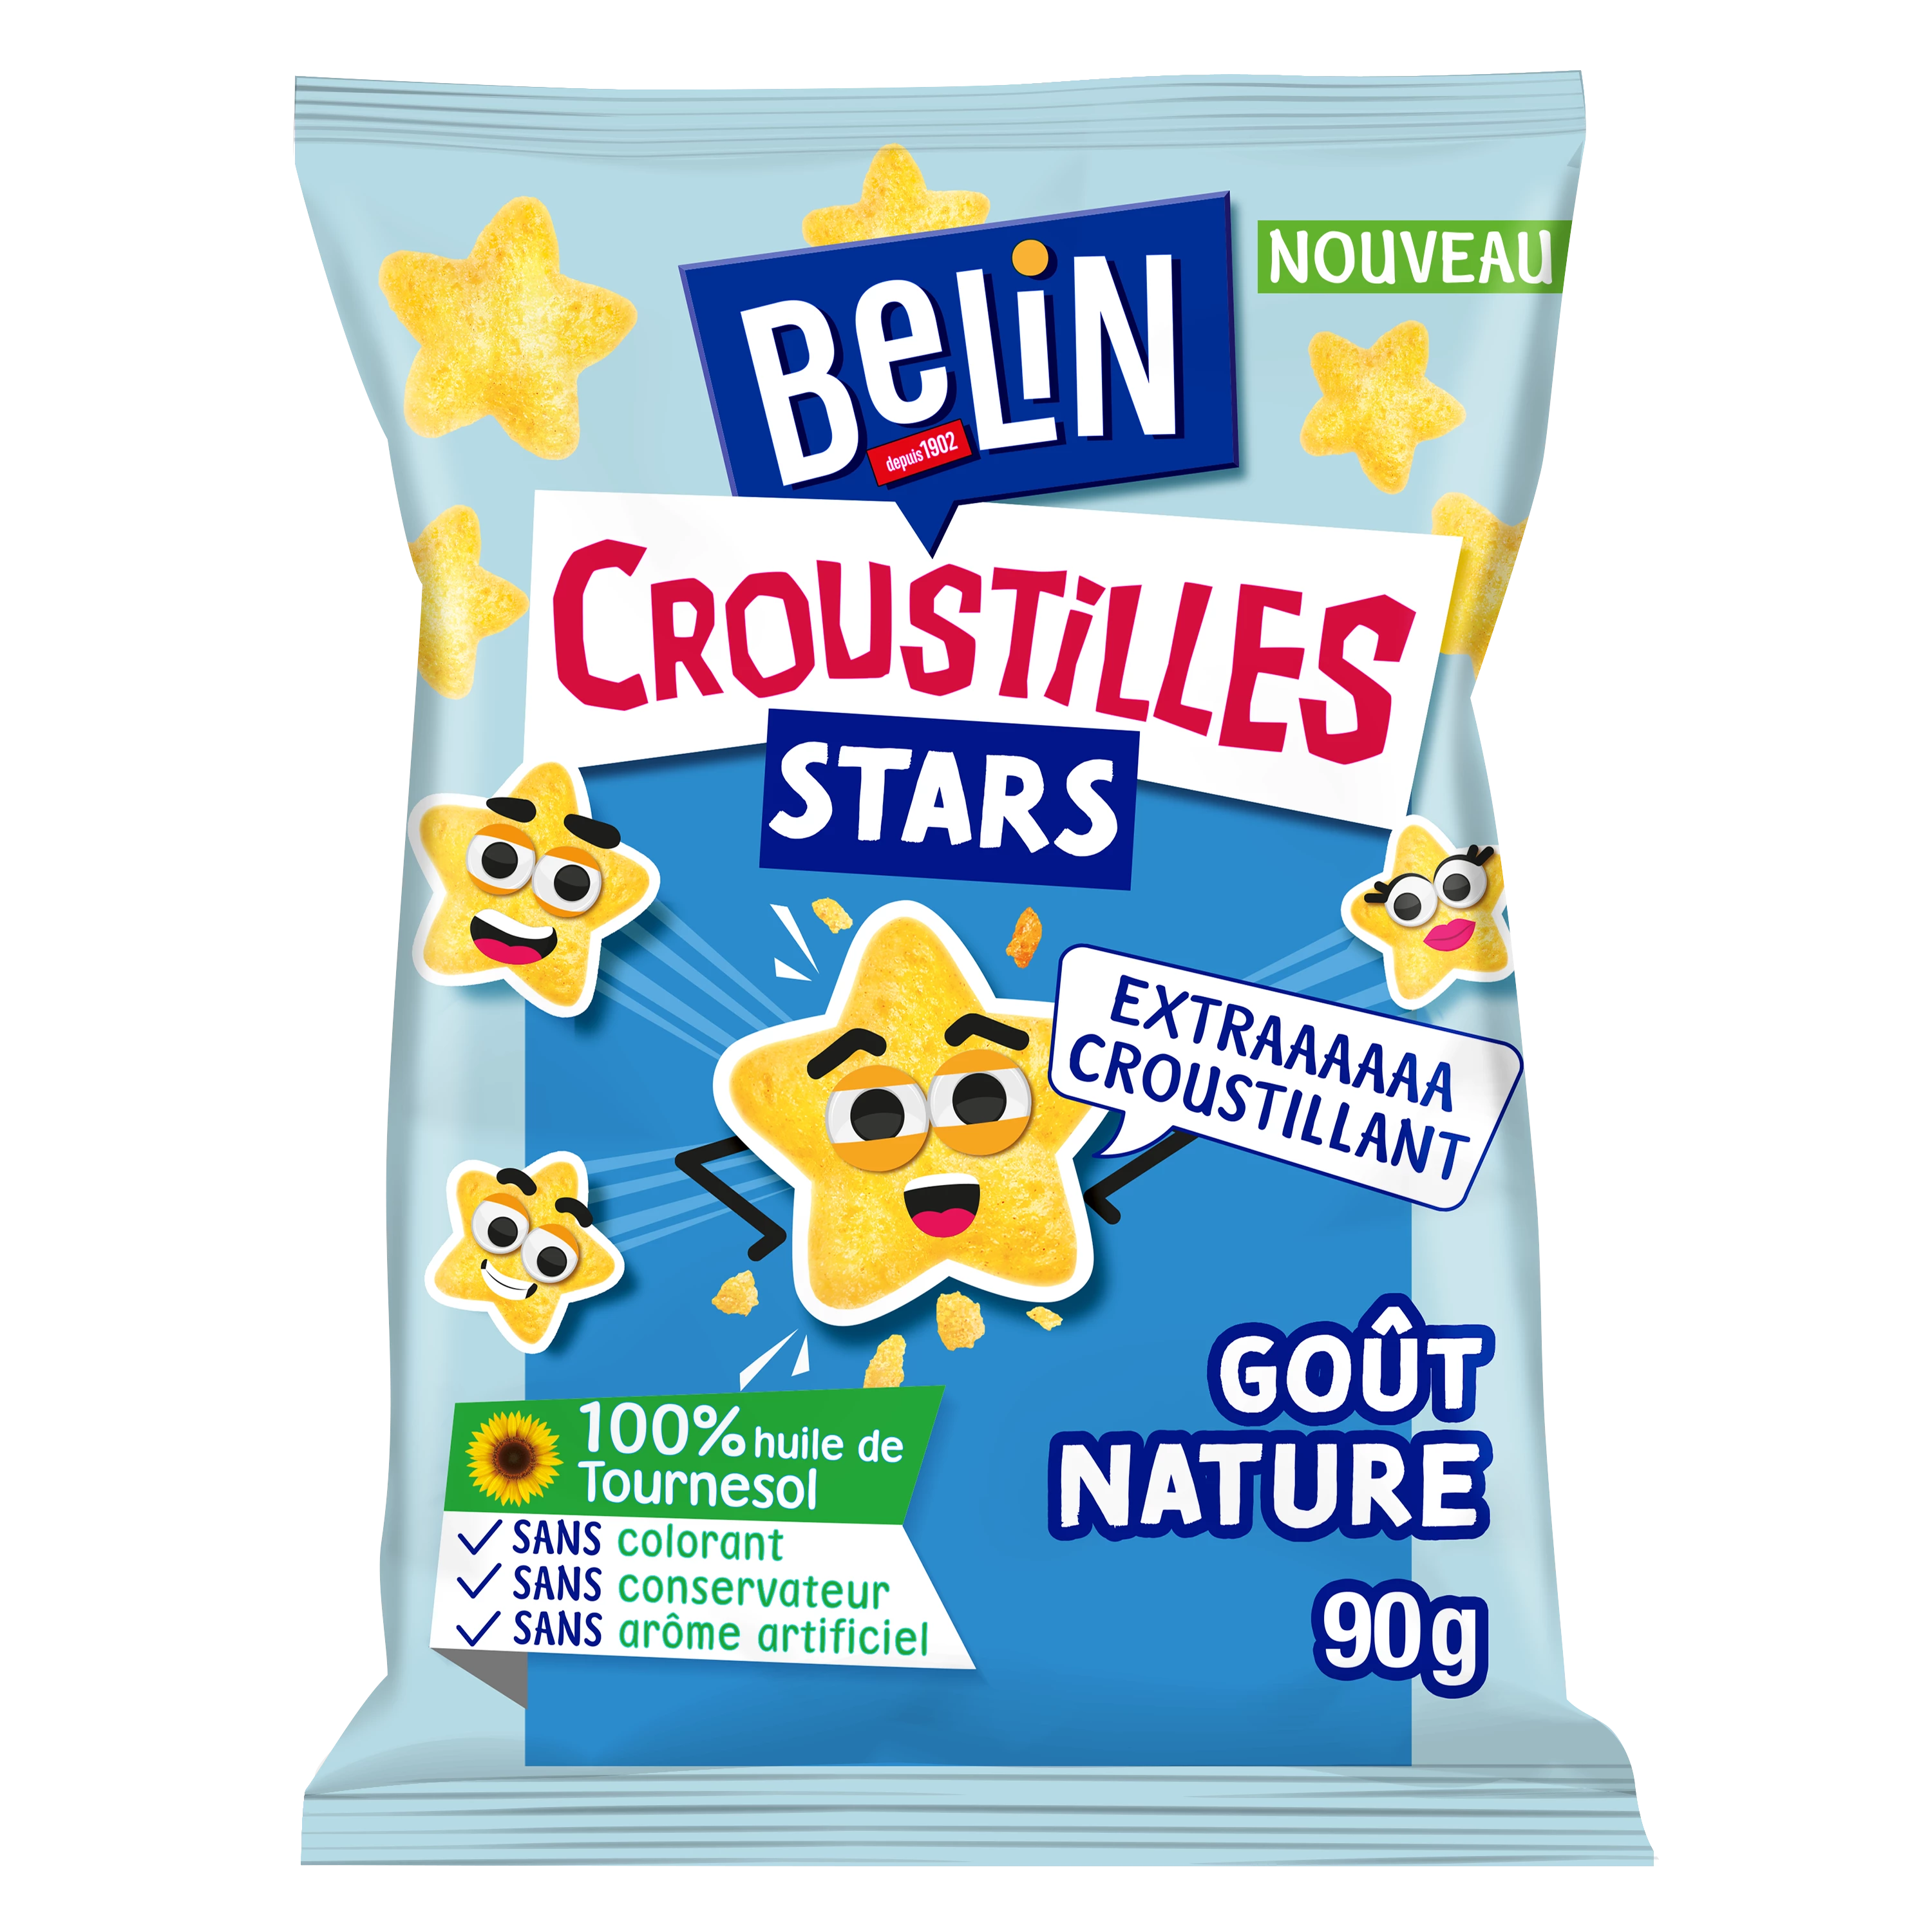 Bánh quy khai vị hương vị tự nhiên Croustil les Stars, 90g - BELIN